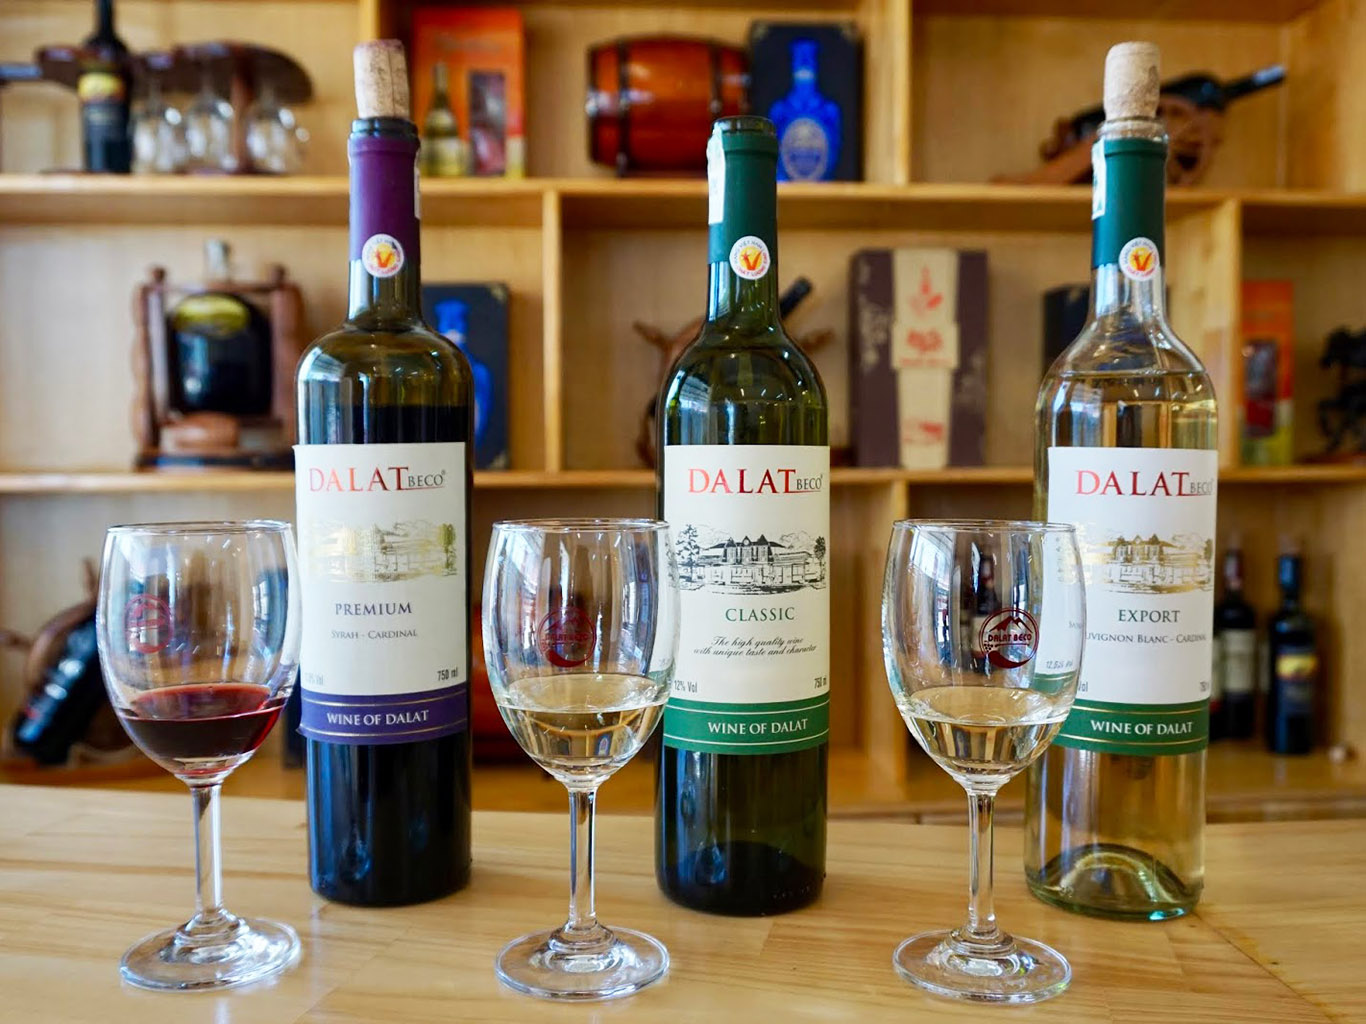 Víno se pěstuje zejména v oblasti města Dalat